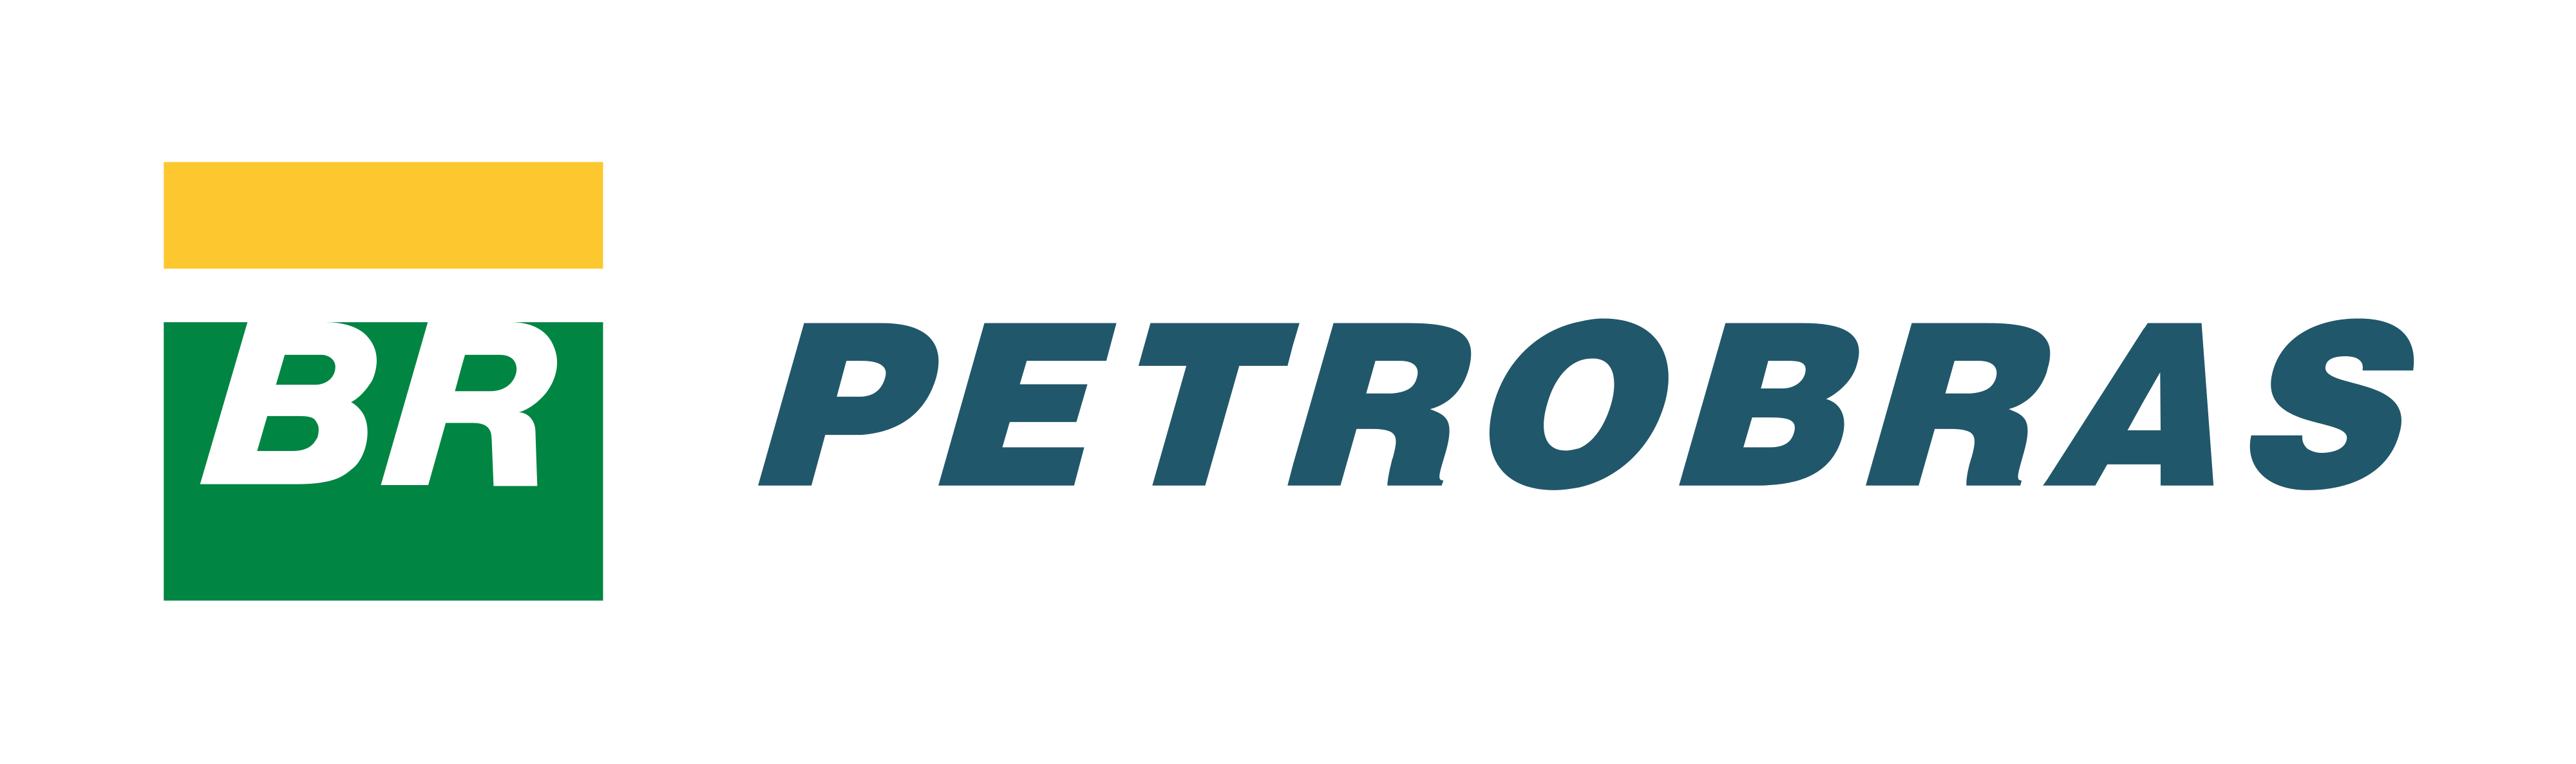 Petrobras Logo.